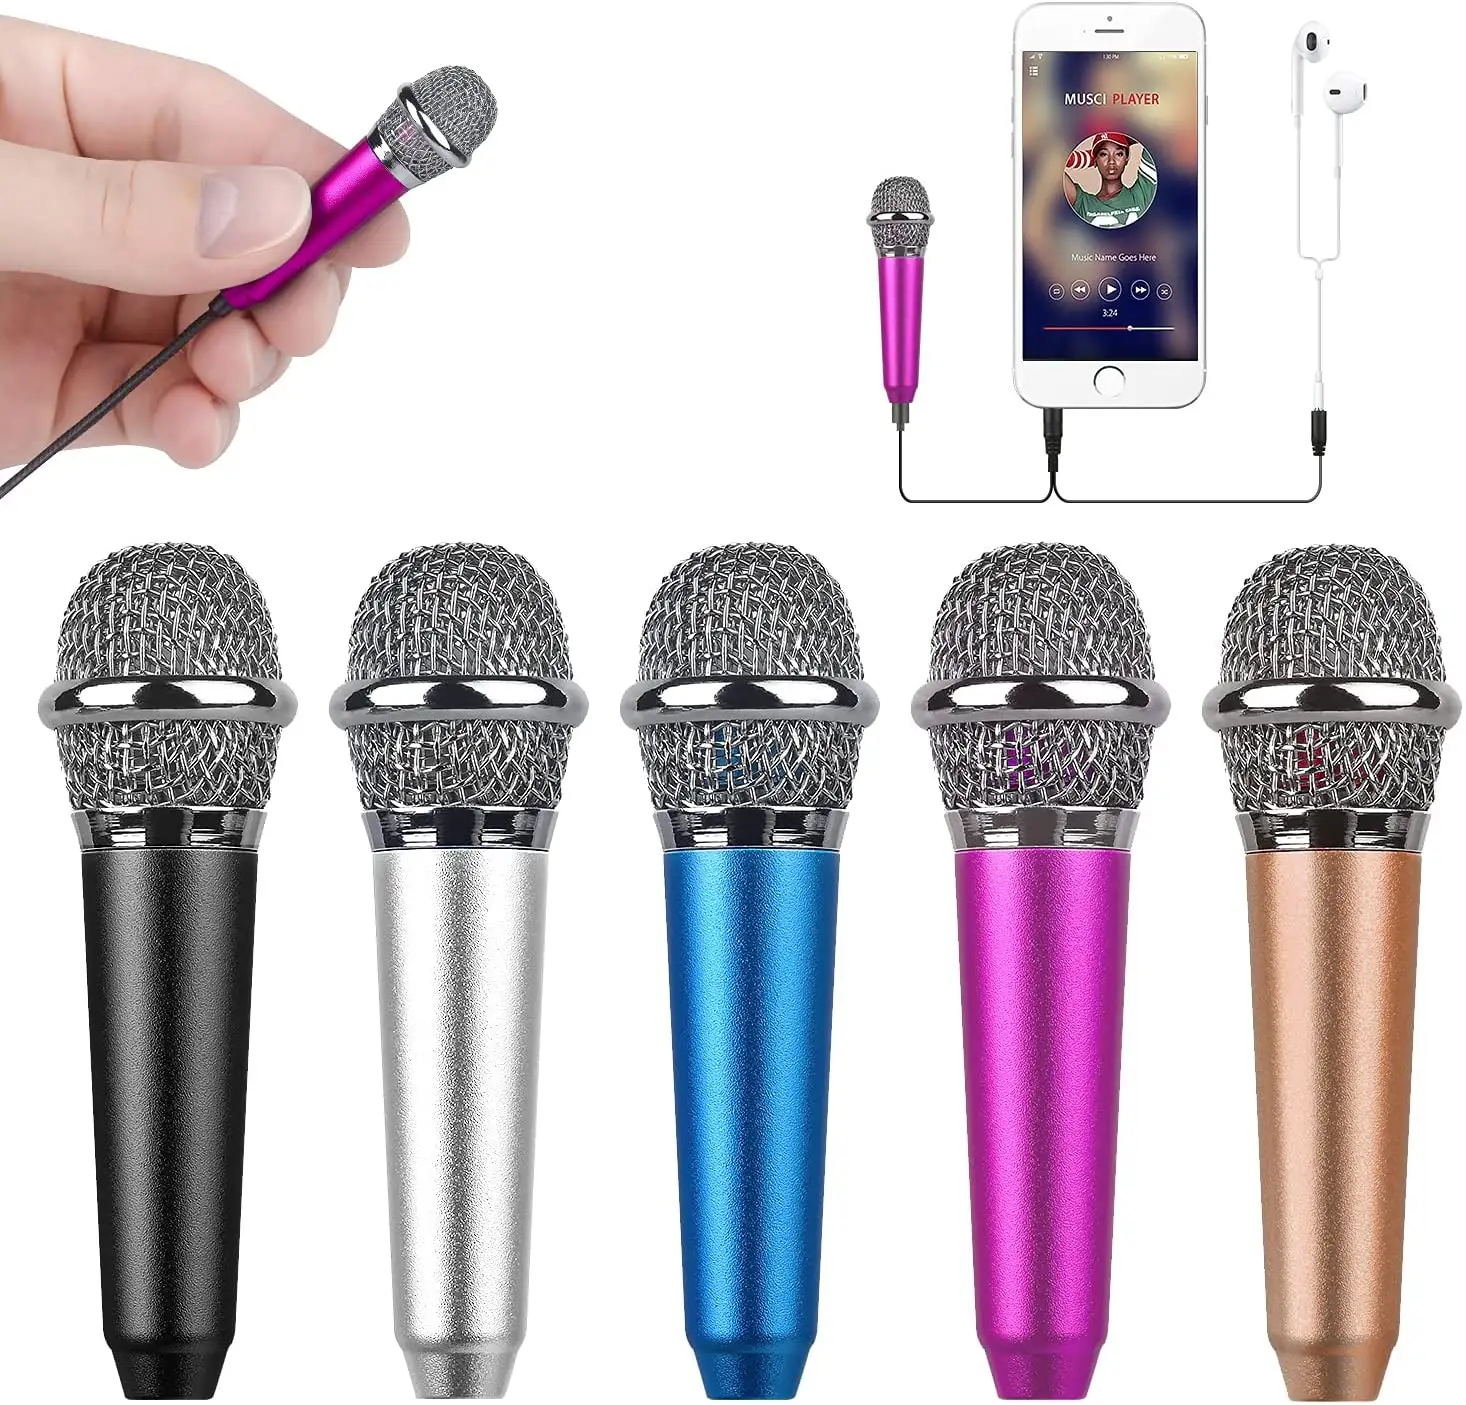 Мини Портативный вокальный/музыкальный инструмент микрофон для мобильного телефона ноутбука Apple iPhone Samsung Android с кронштейн зажим